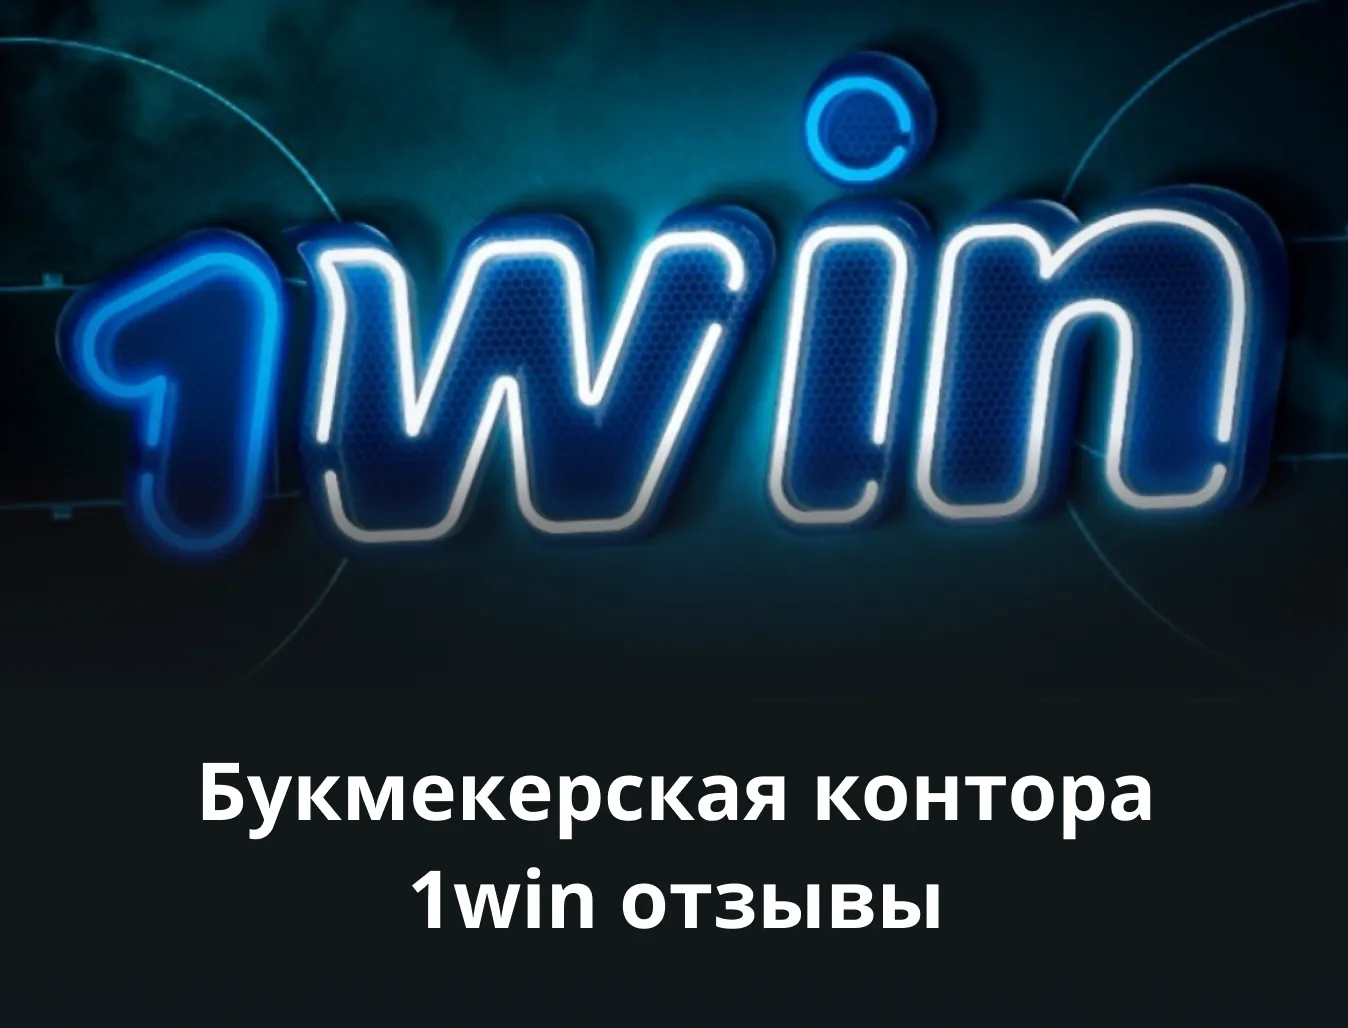 1win официальный сайт отзывы клиентов